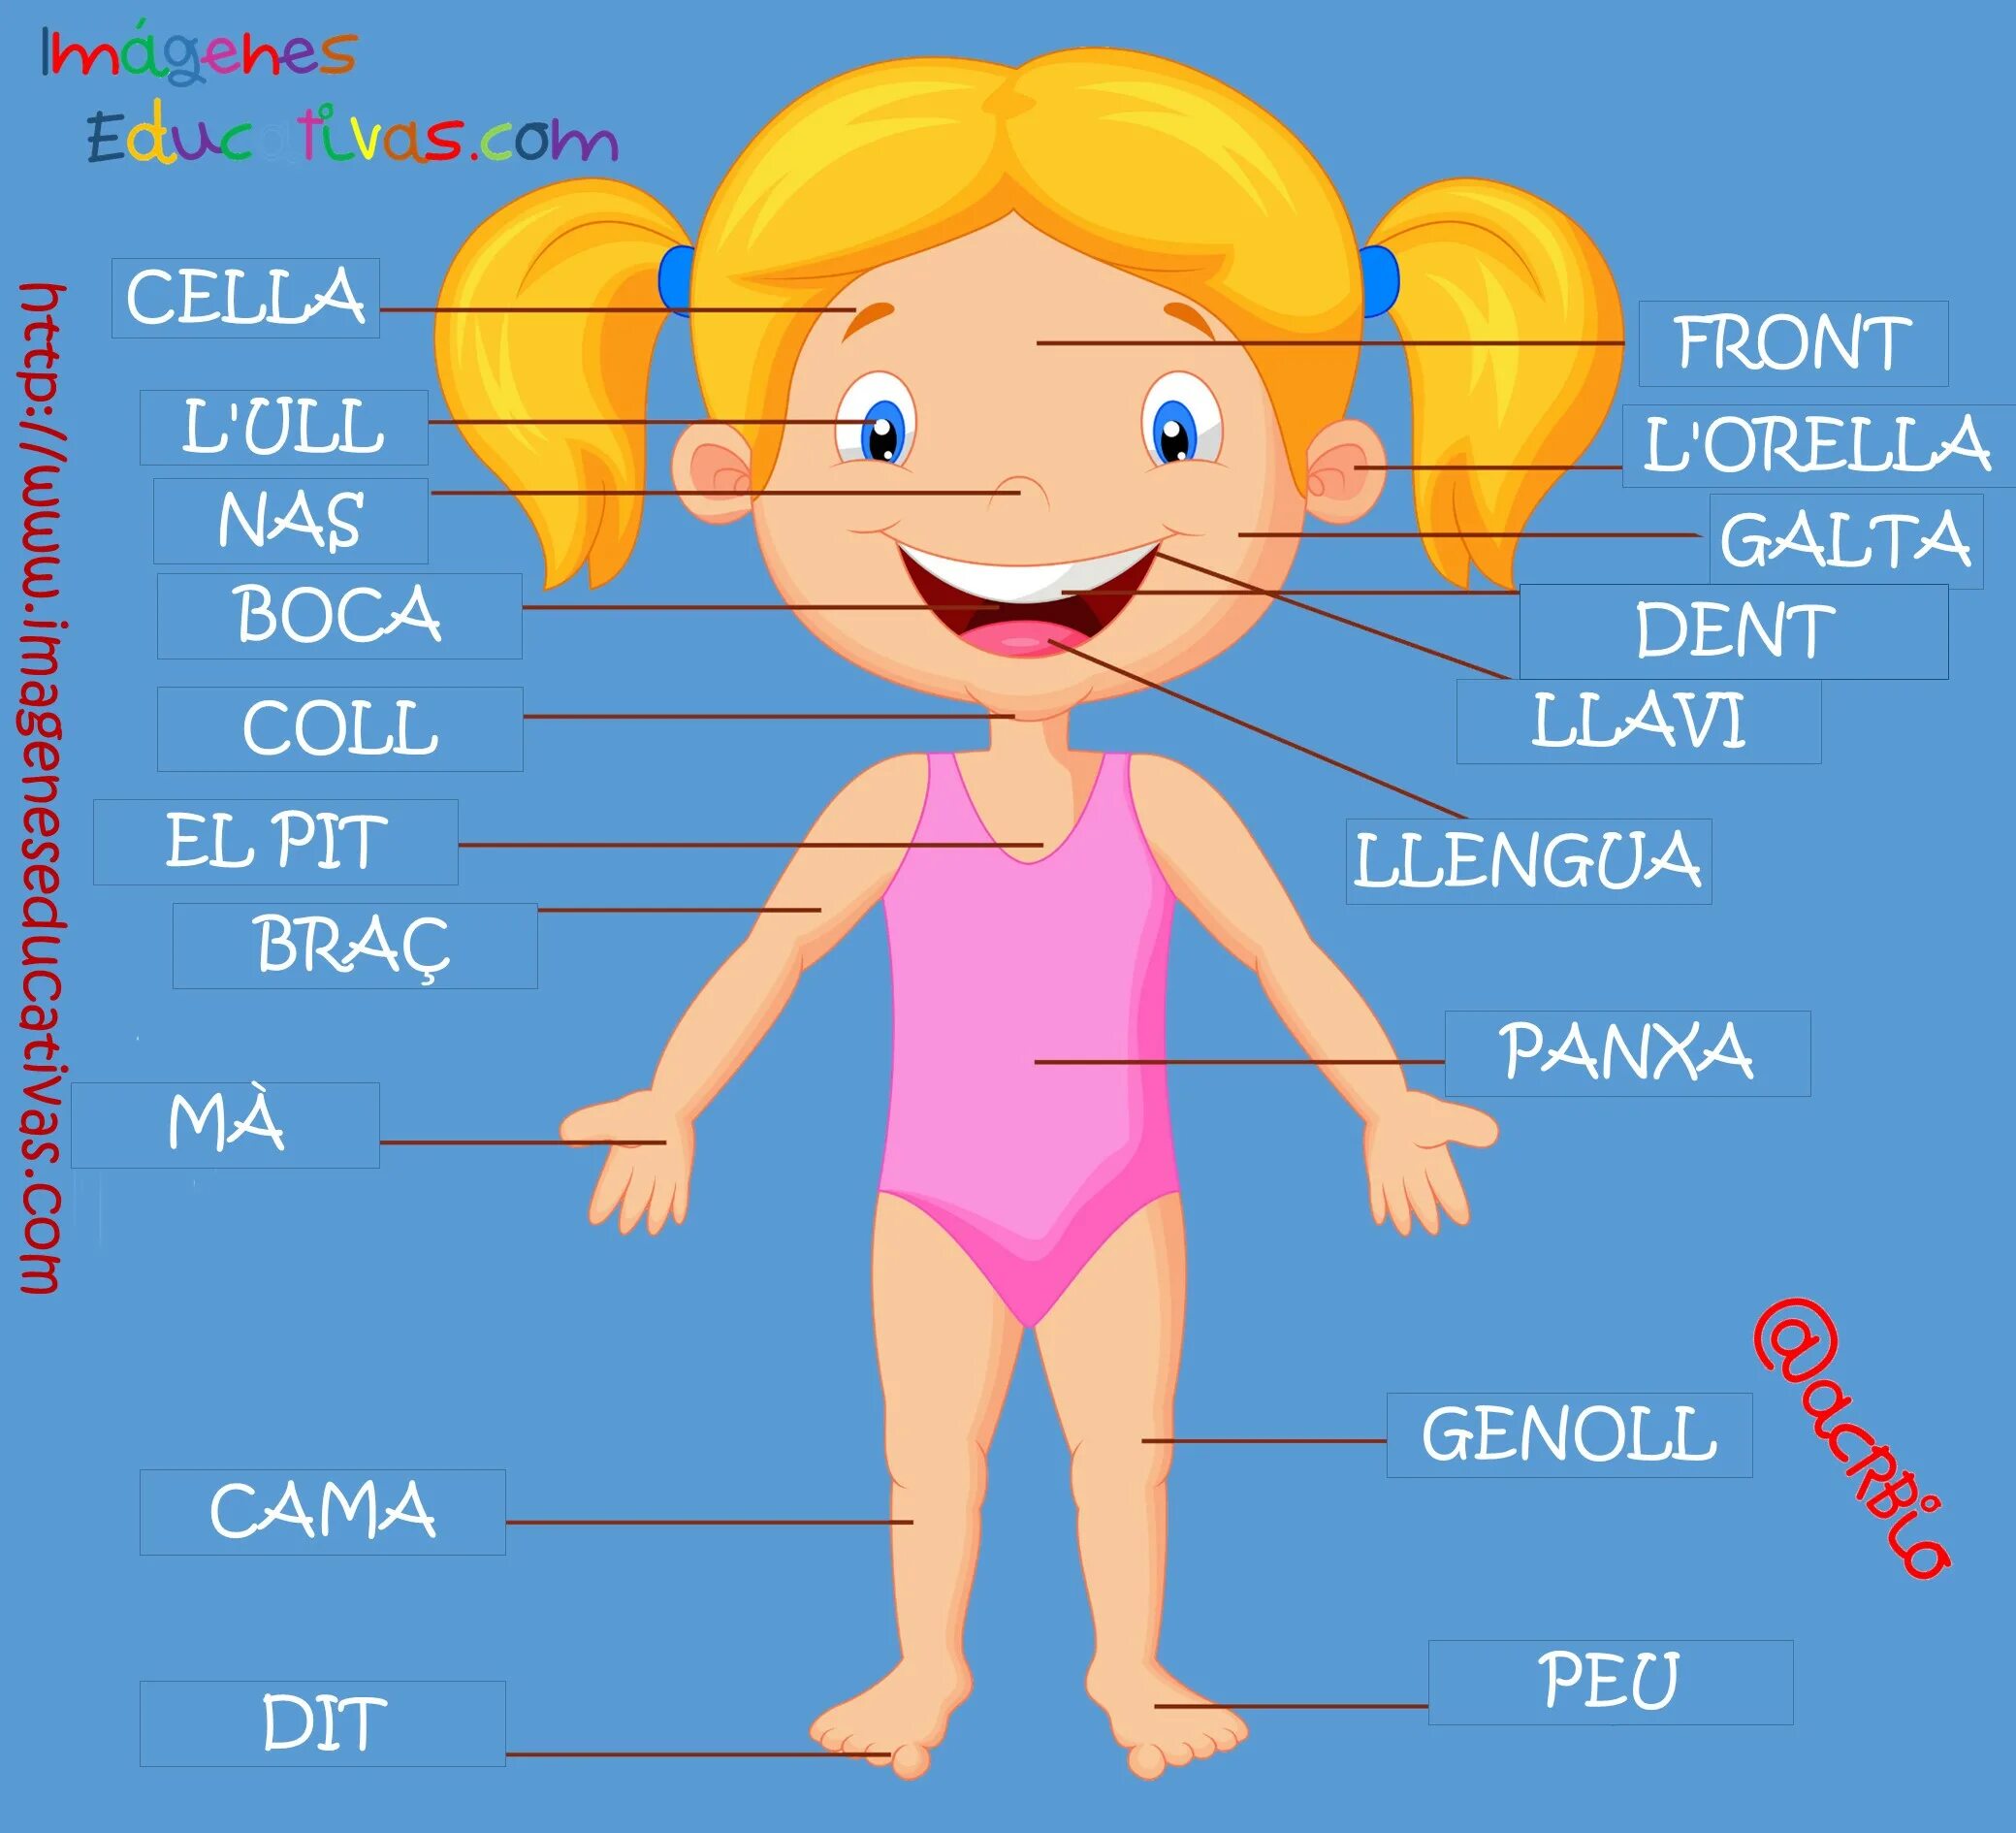 Название частей человека. Части тела человека на испанском. Части тела на испанском для детей. Названия частей тела на испанском. Тело человека на испанском языке.